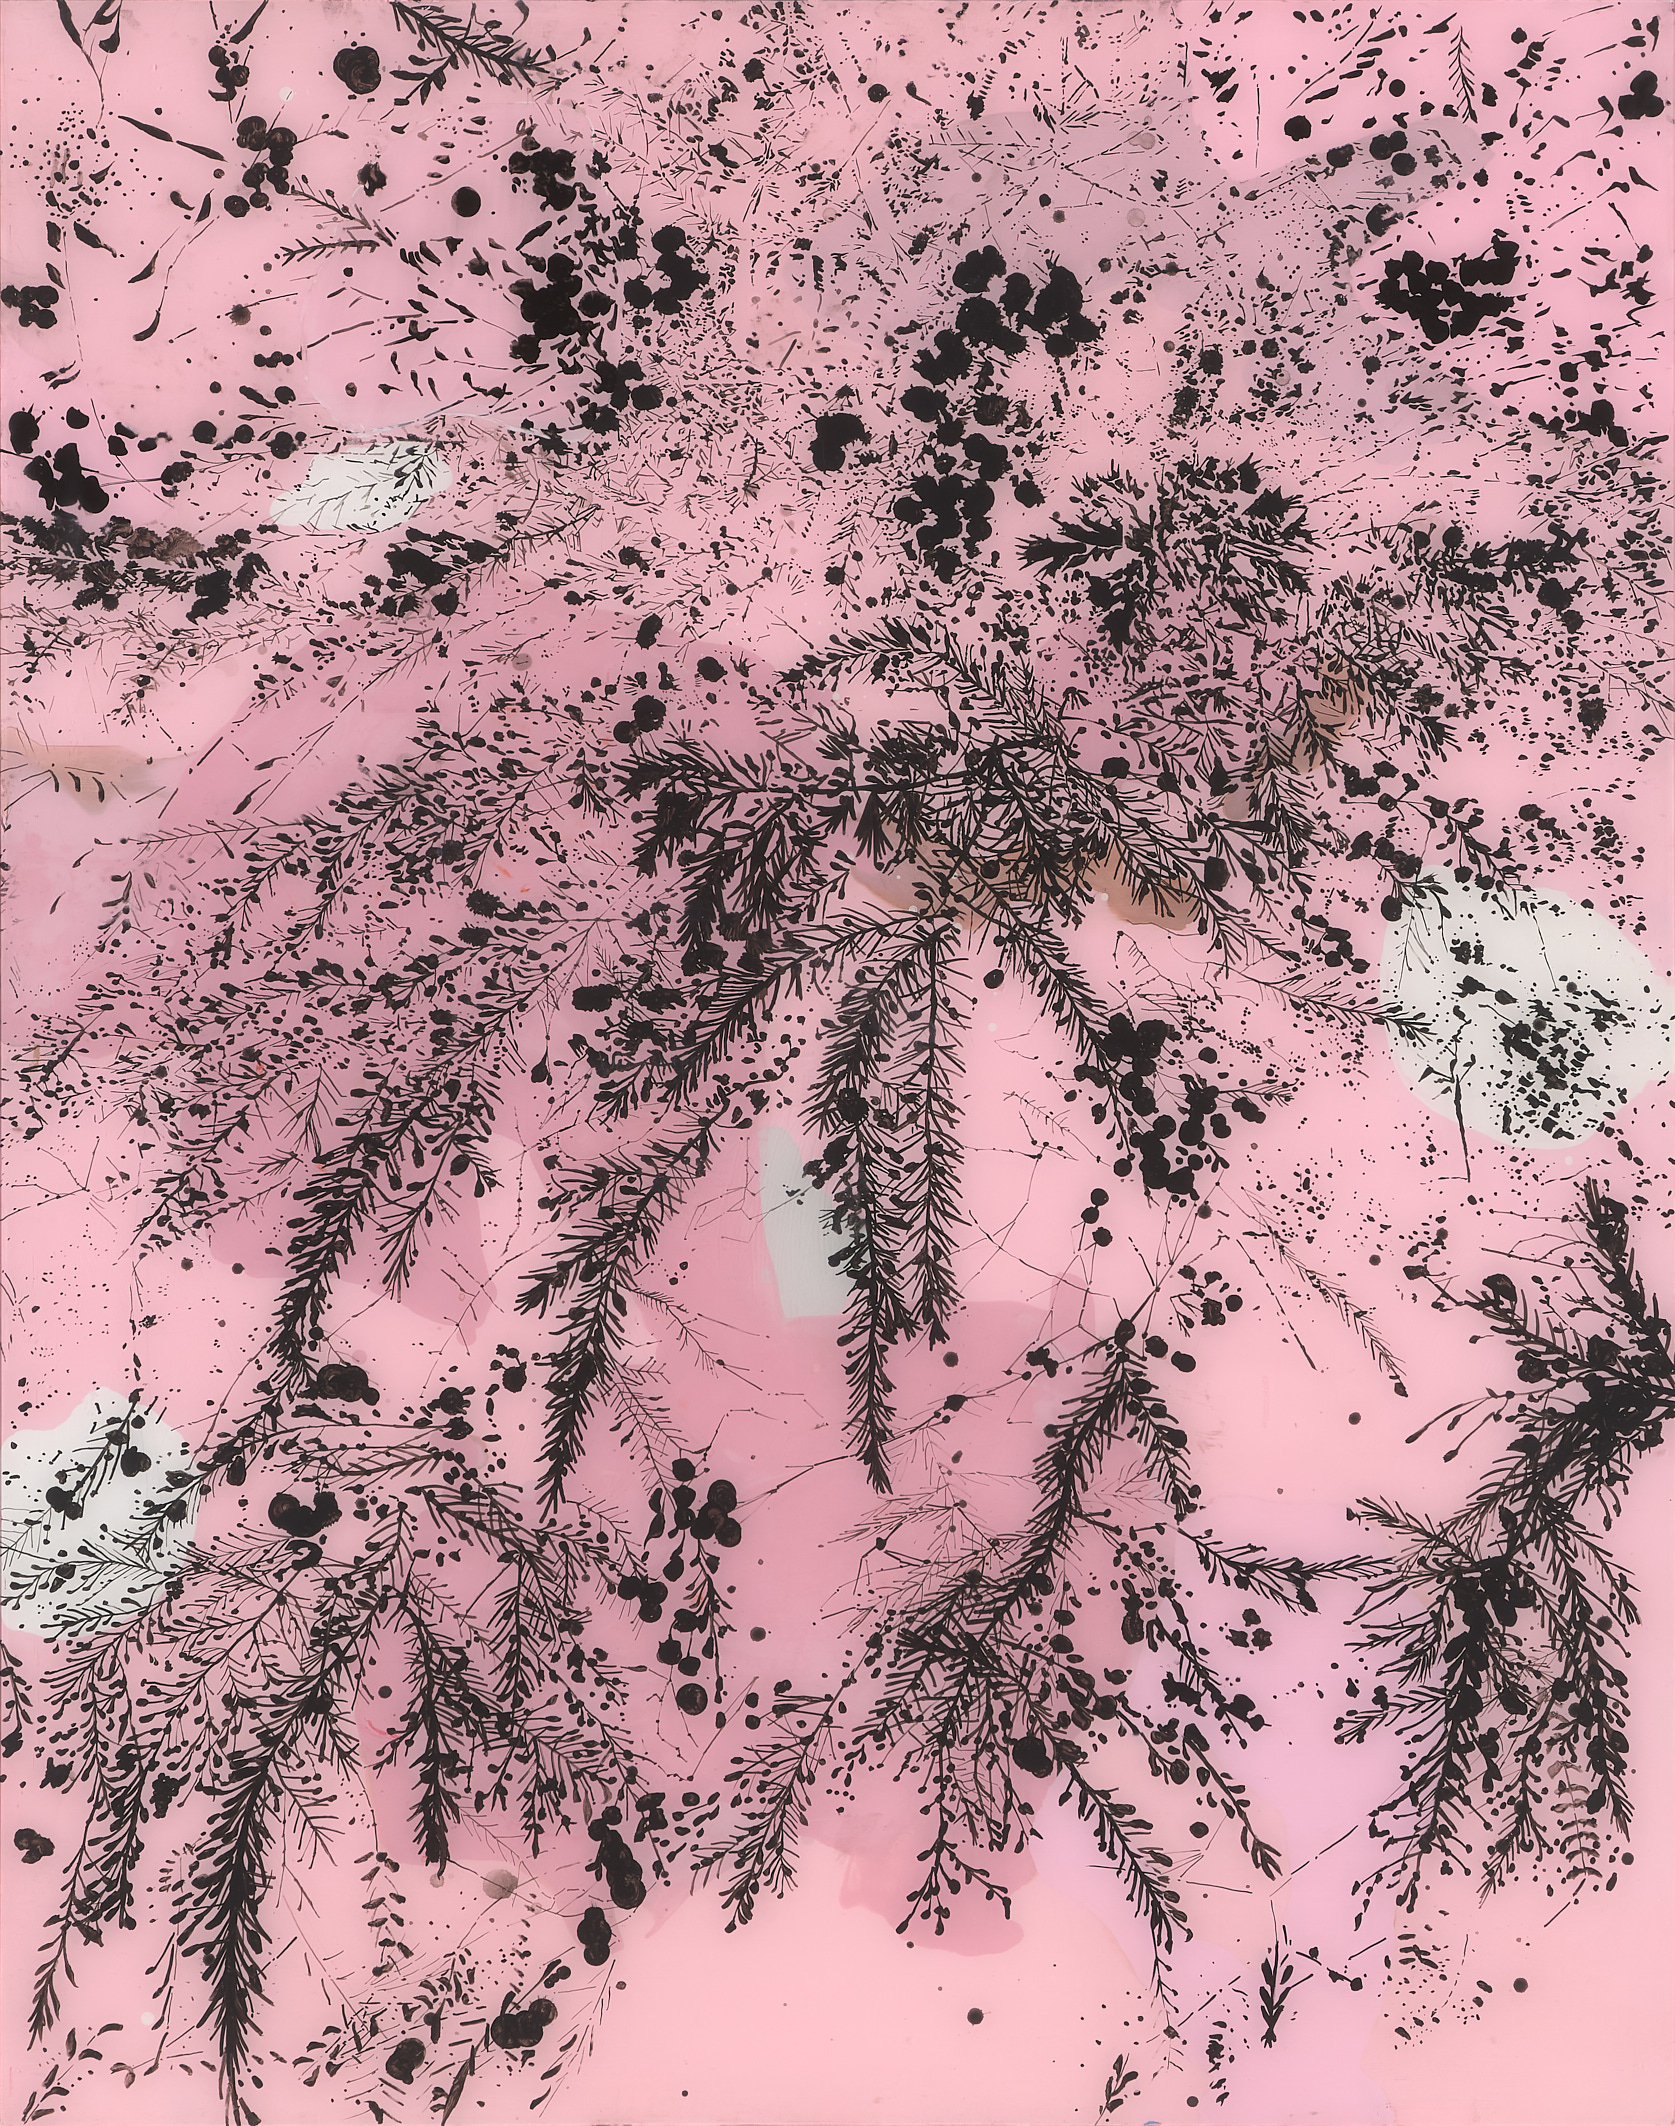 Mark Hislop 'Fern Tree Gully 1' Acrylic on acrylic sheet 165 x 122cm $9,000